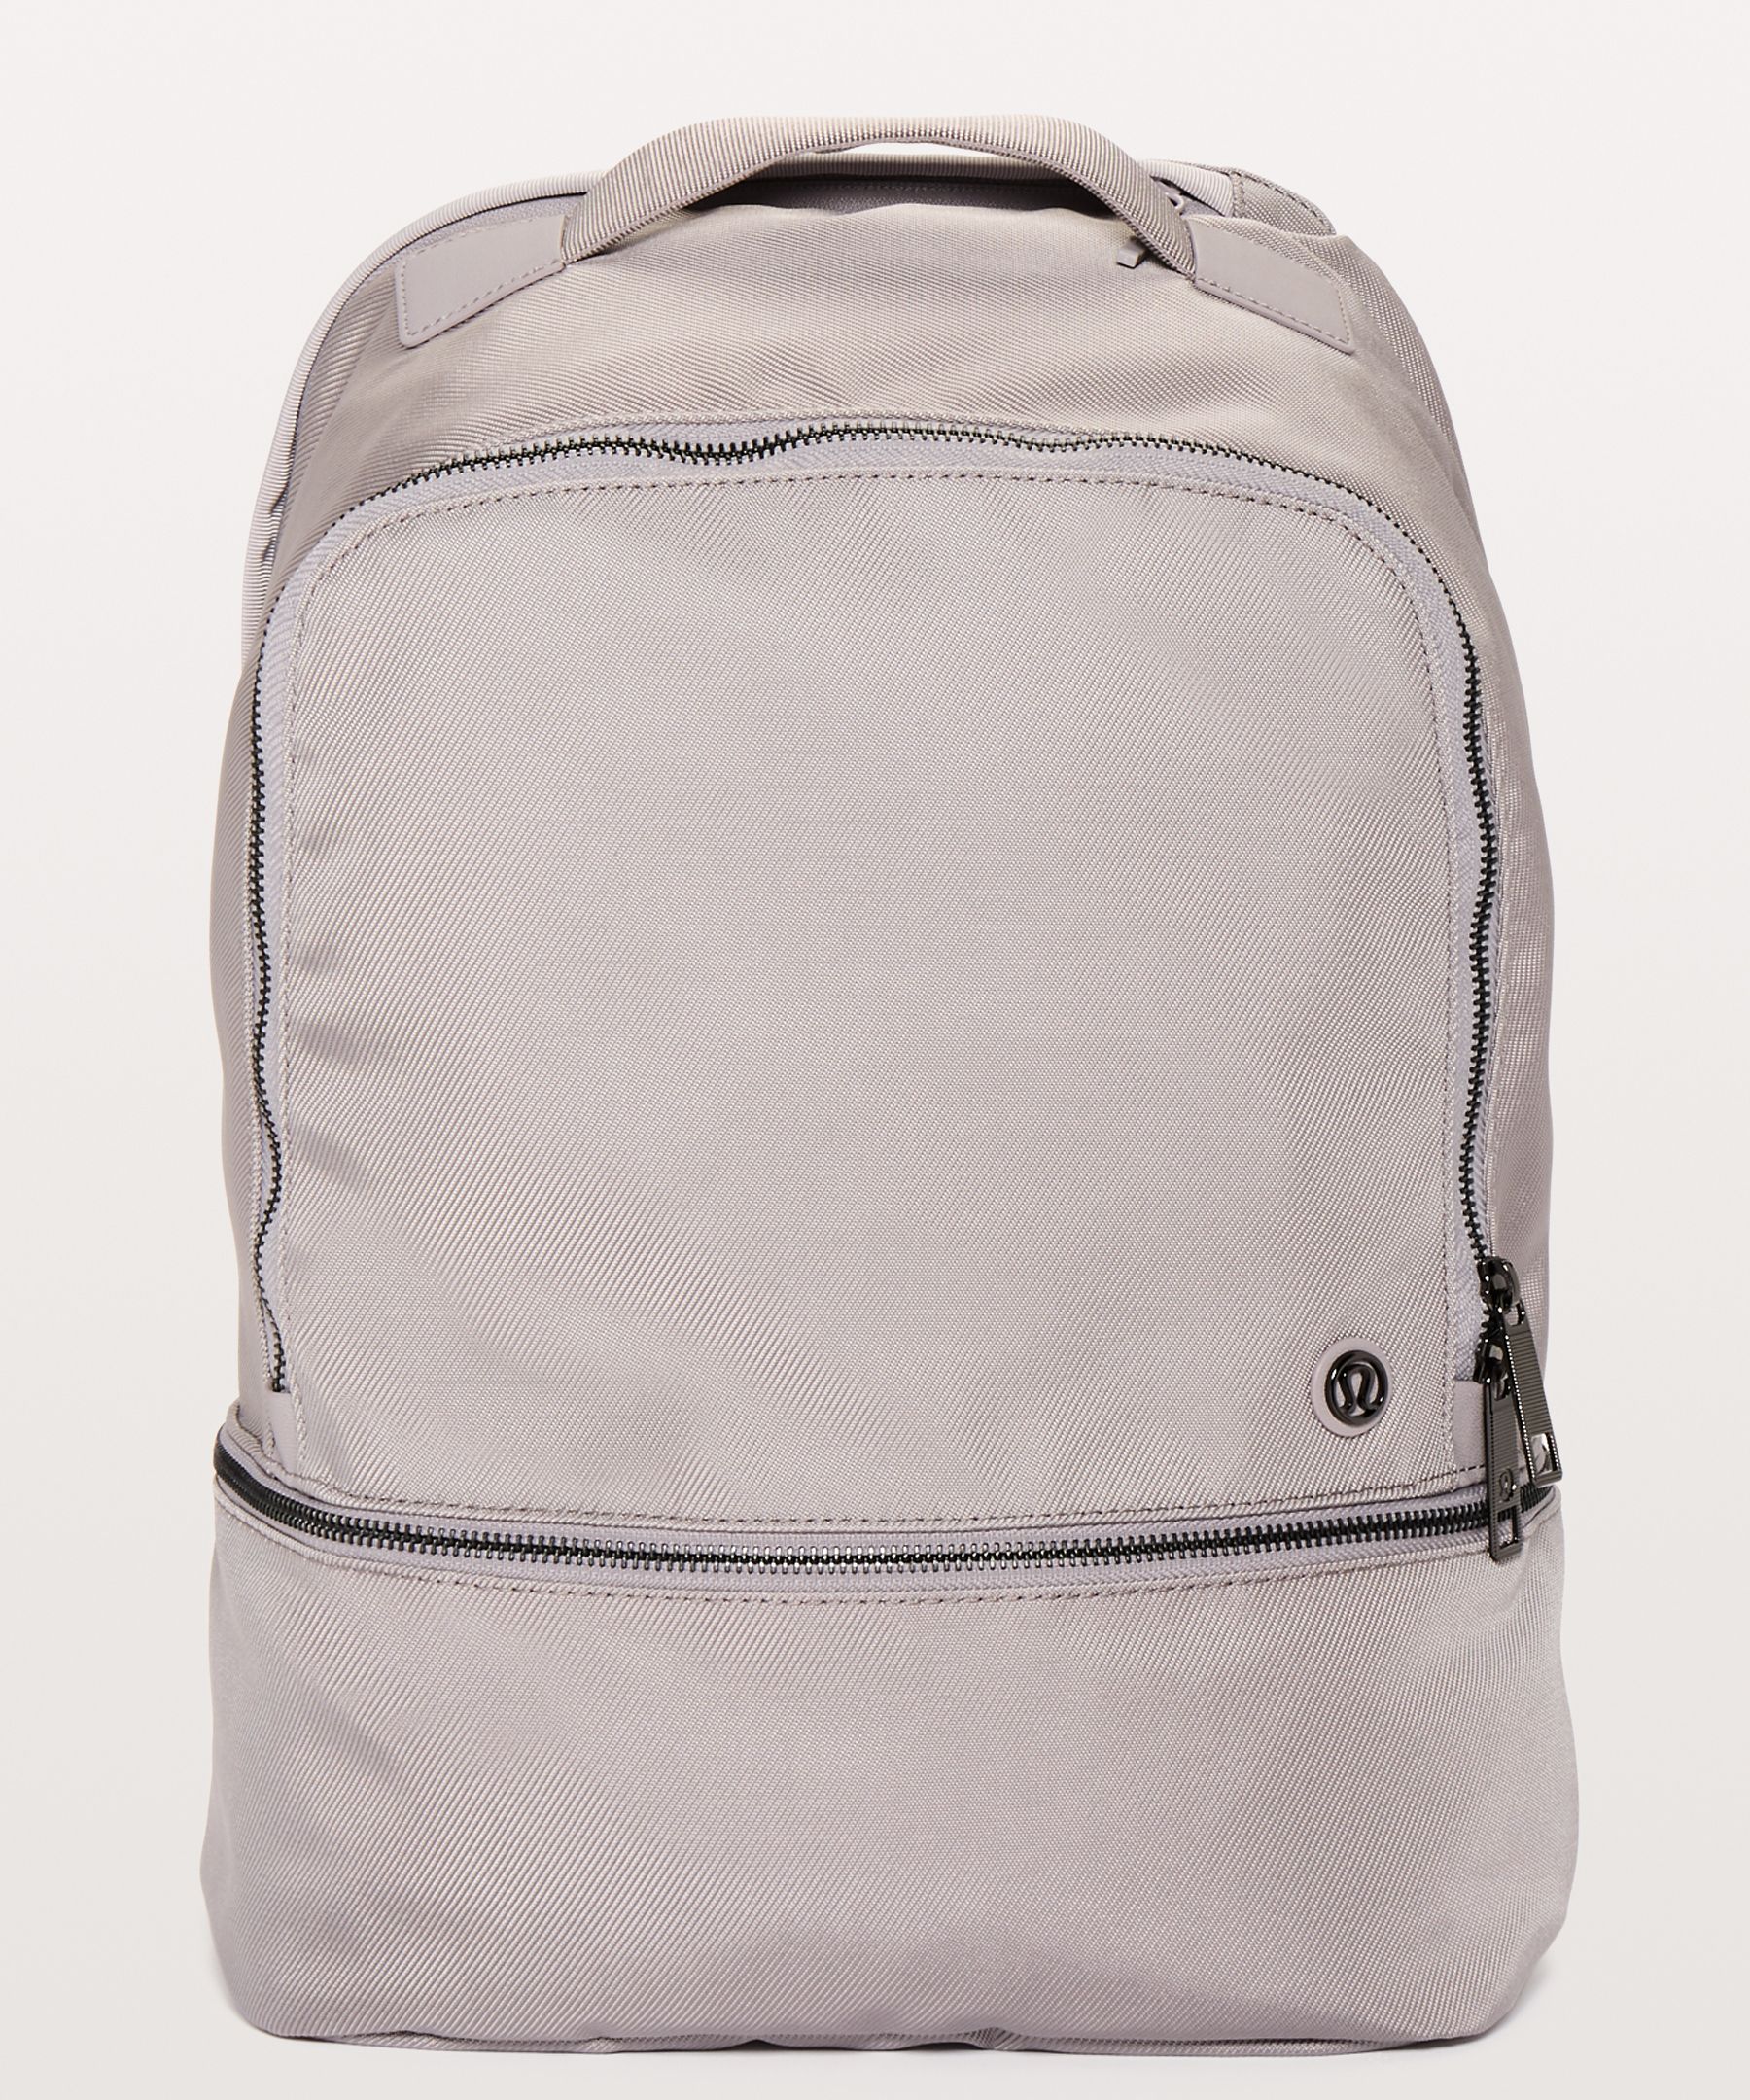 lululemon 17l backpack